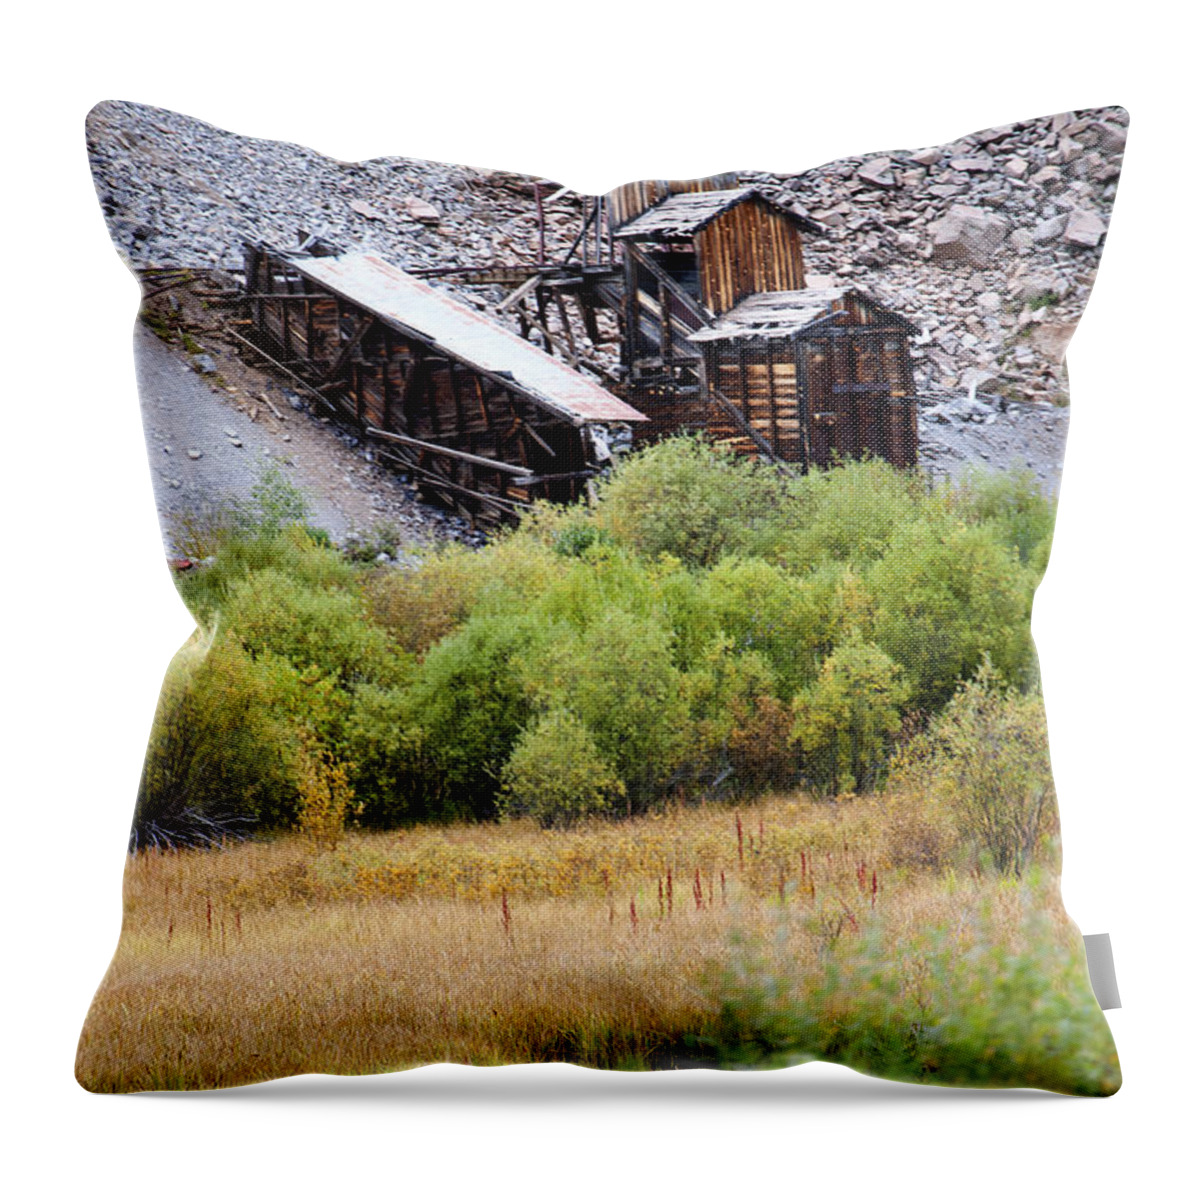 Durango Throw Pillow featuring the photograph Colorado Silver Mine by Brenda Kean